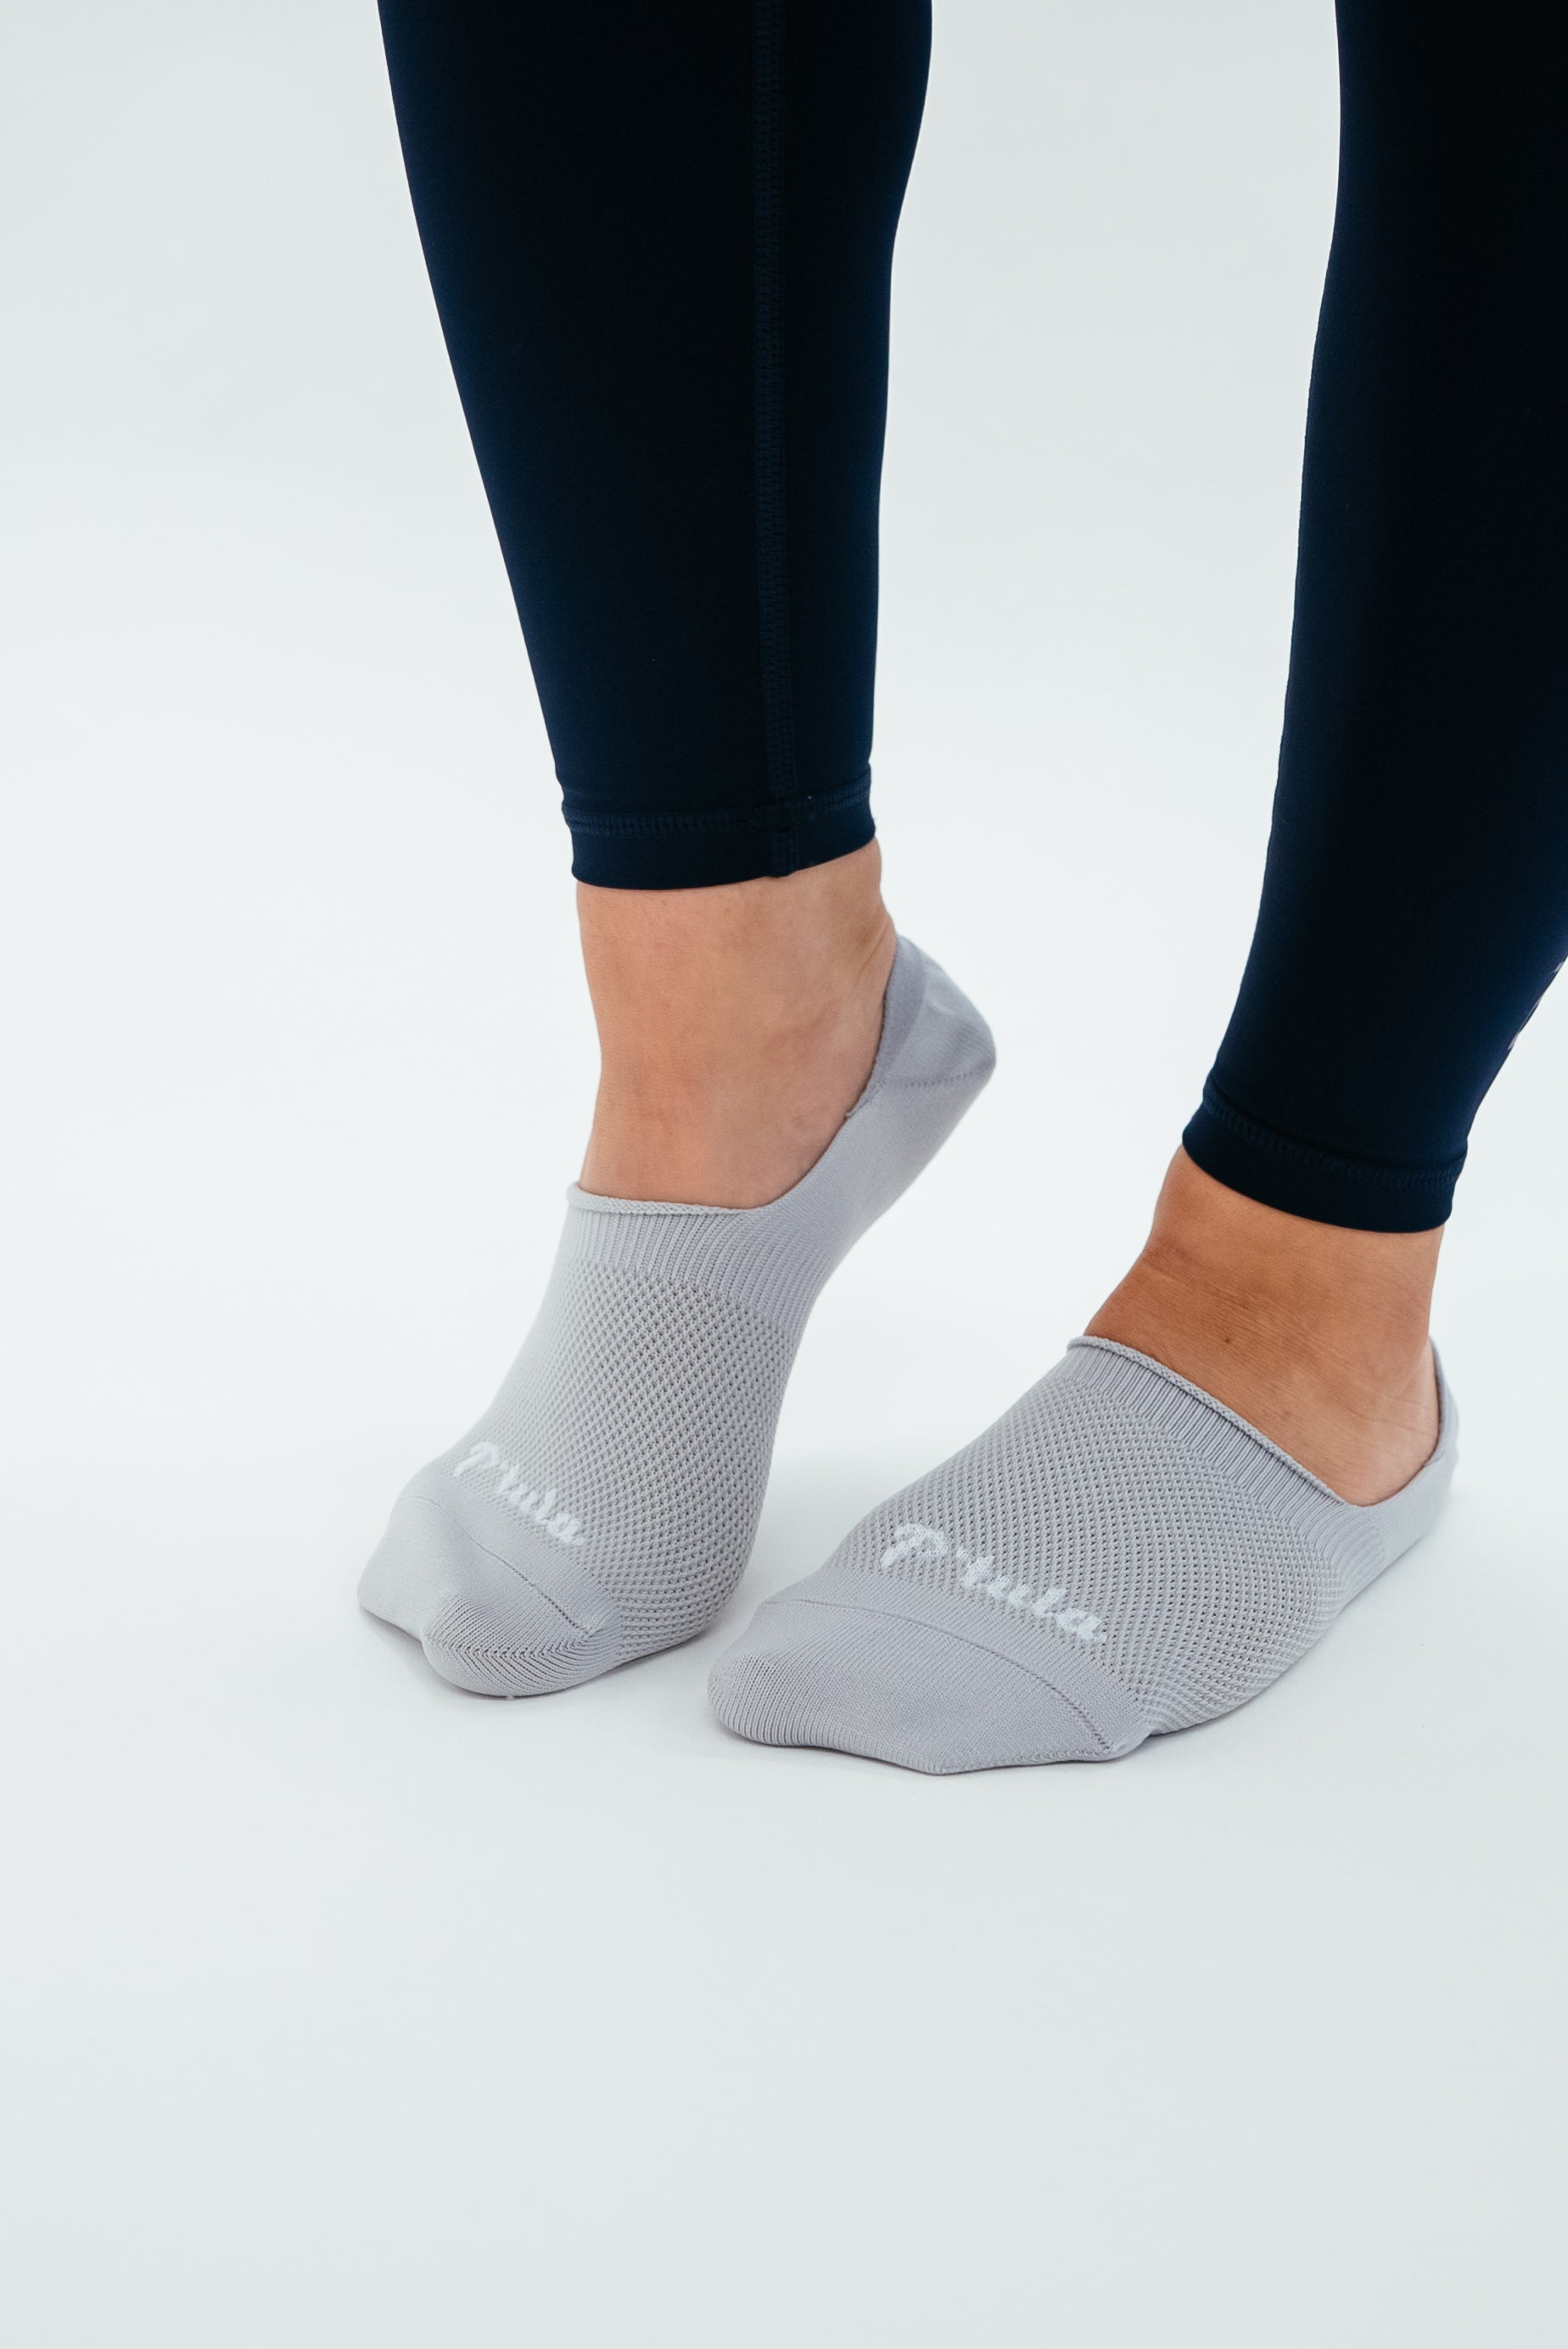 Seamless Leggings + Sock Bundle - Seamless